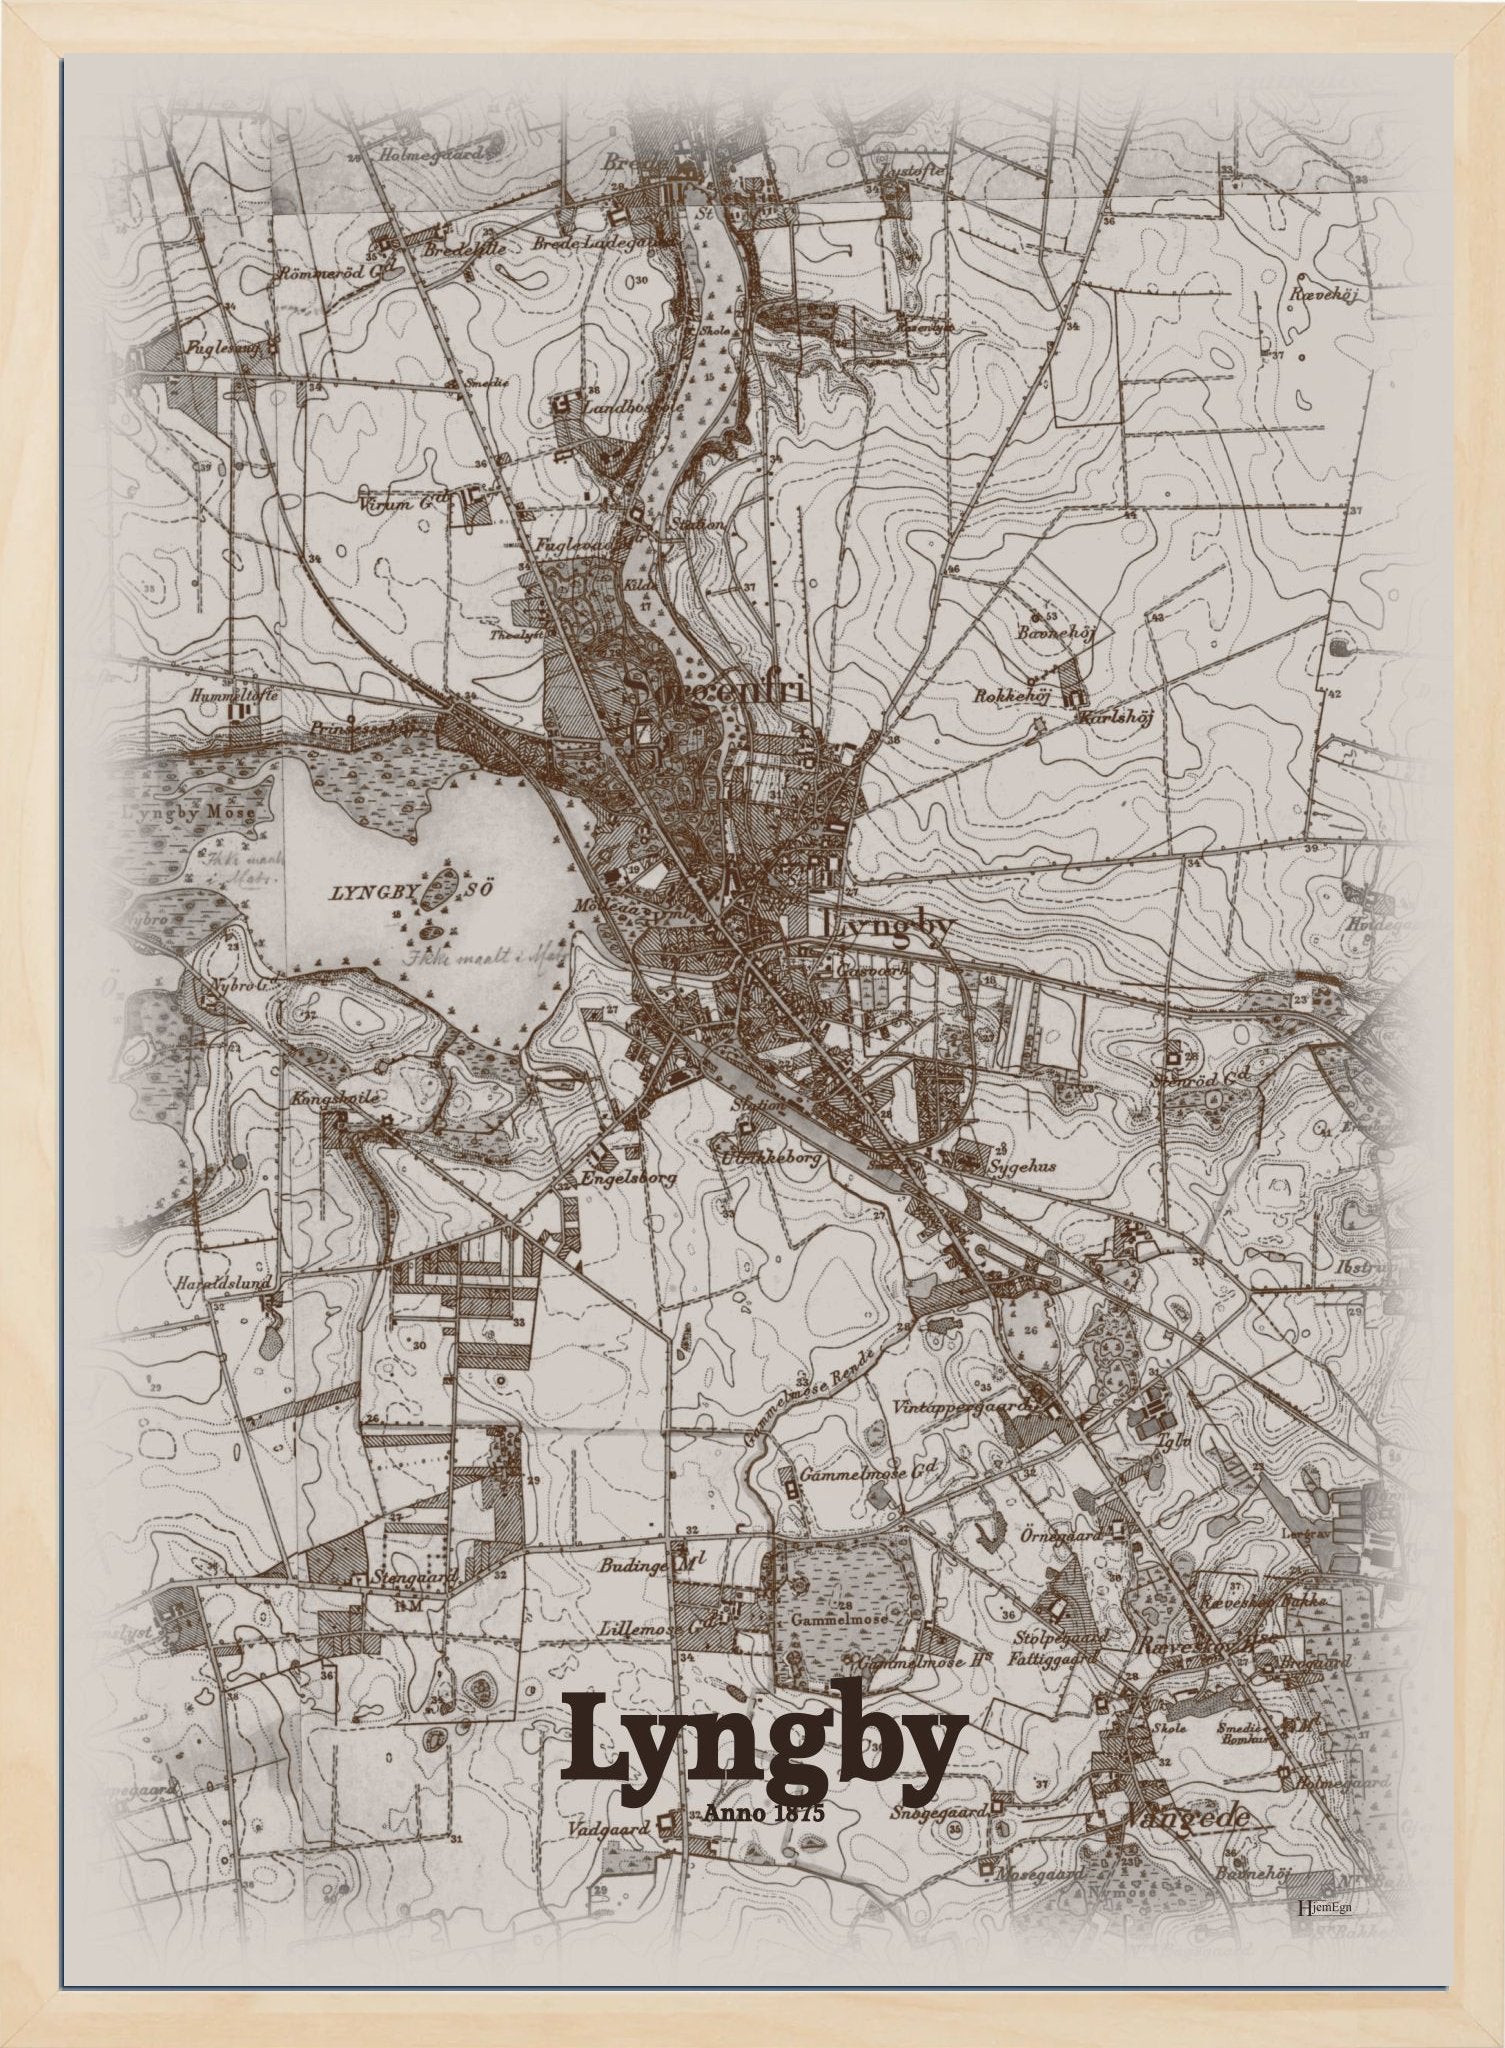 Lyngby anno år 1875 | retro plakat fra din HjemEgn | hurtig levering og høj kvalitet [køb nu] 